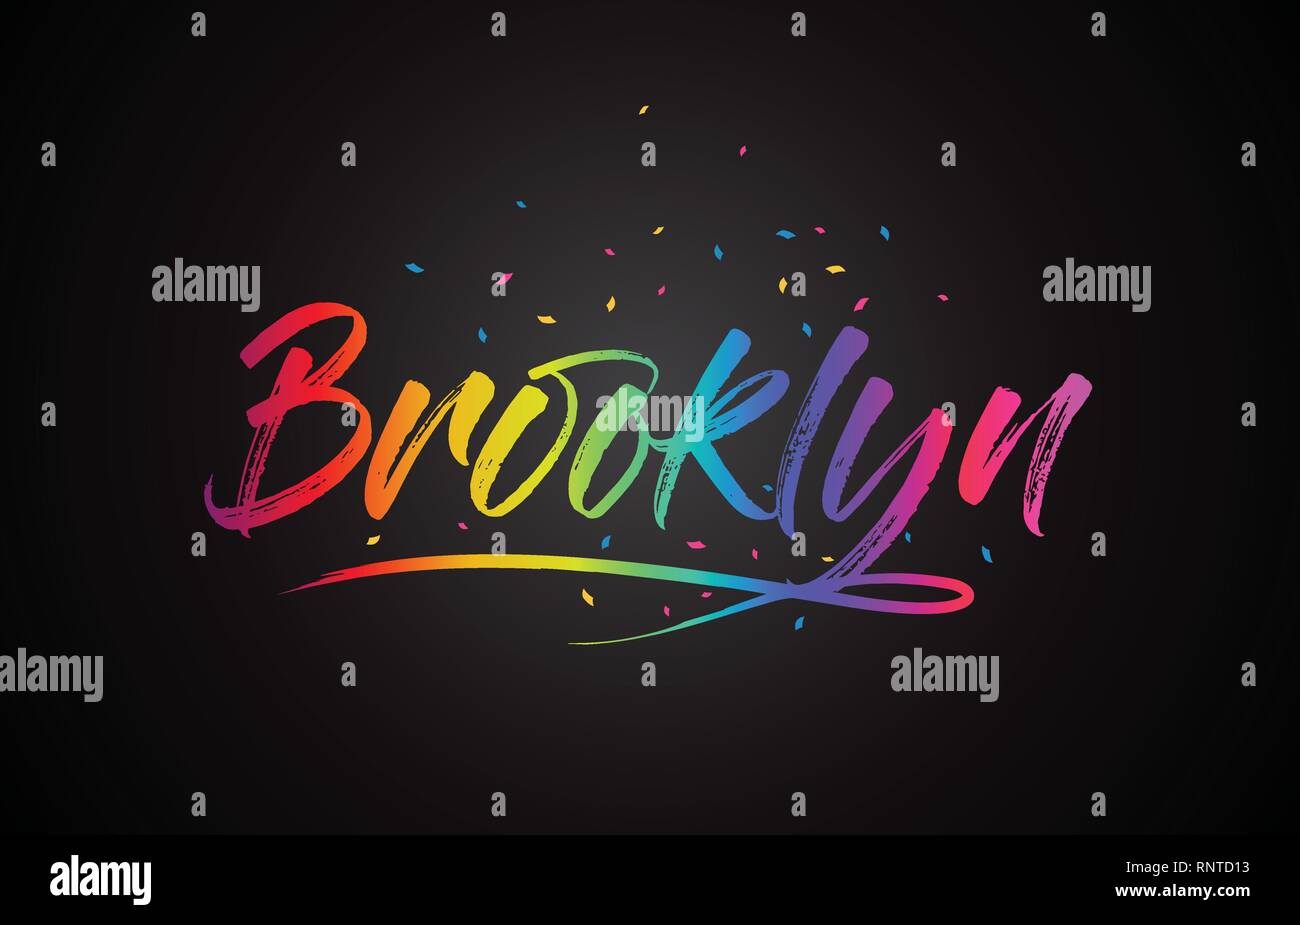 Brooklyn parola di testo scritto a mano con arcobaleno di colori brillanti e coriandoli illustrazione vettoriale. Illustrazione Vettoriale